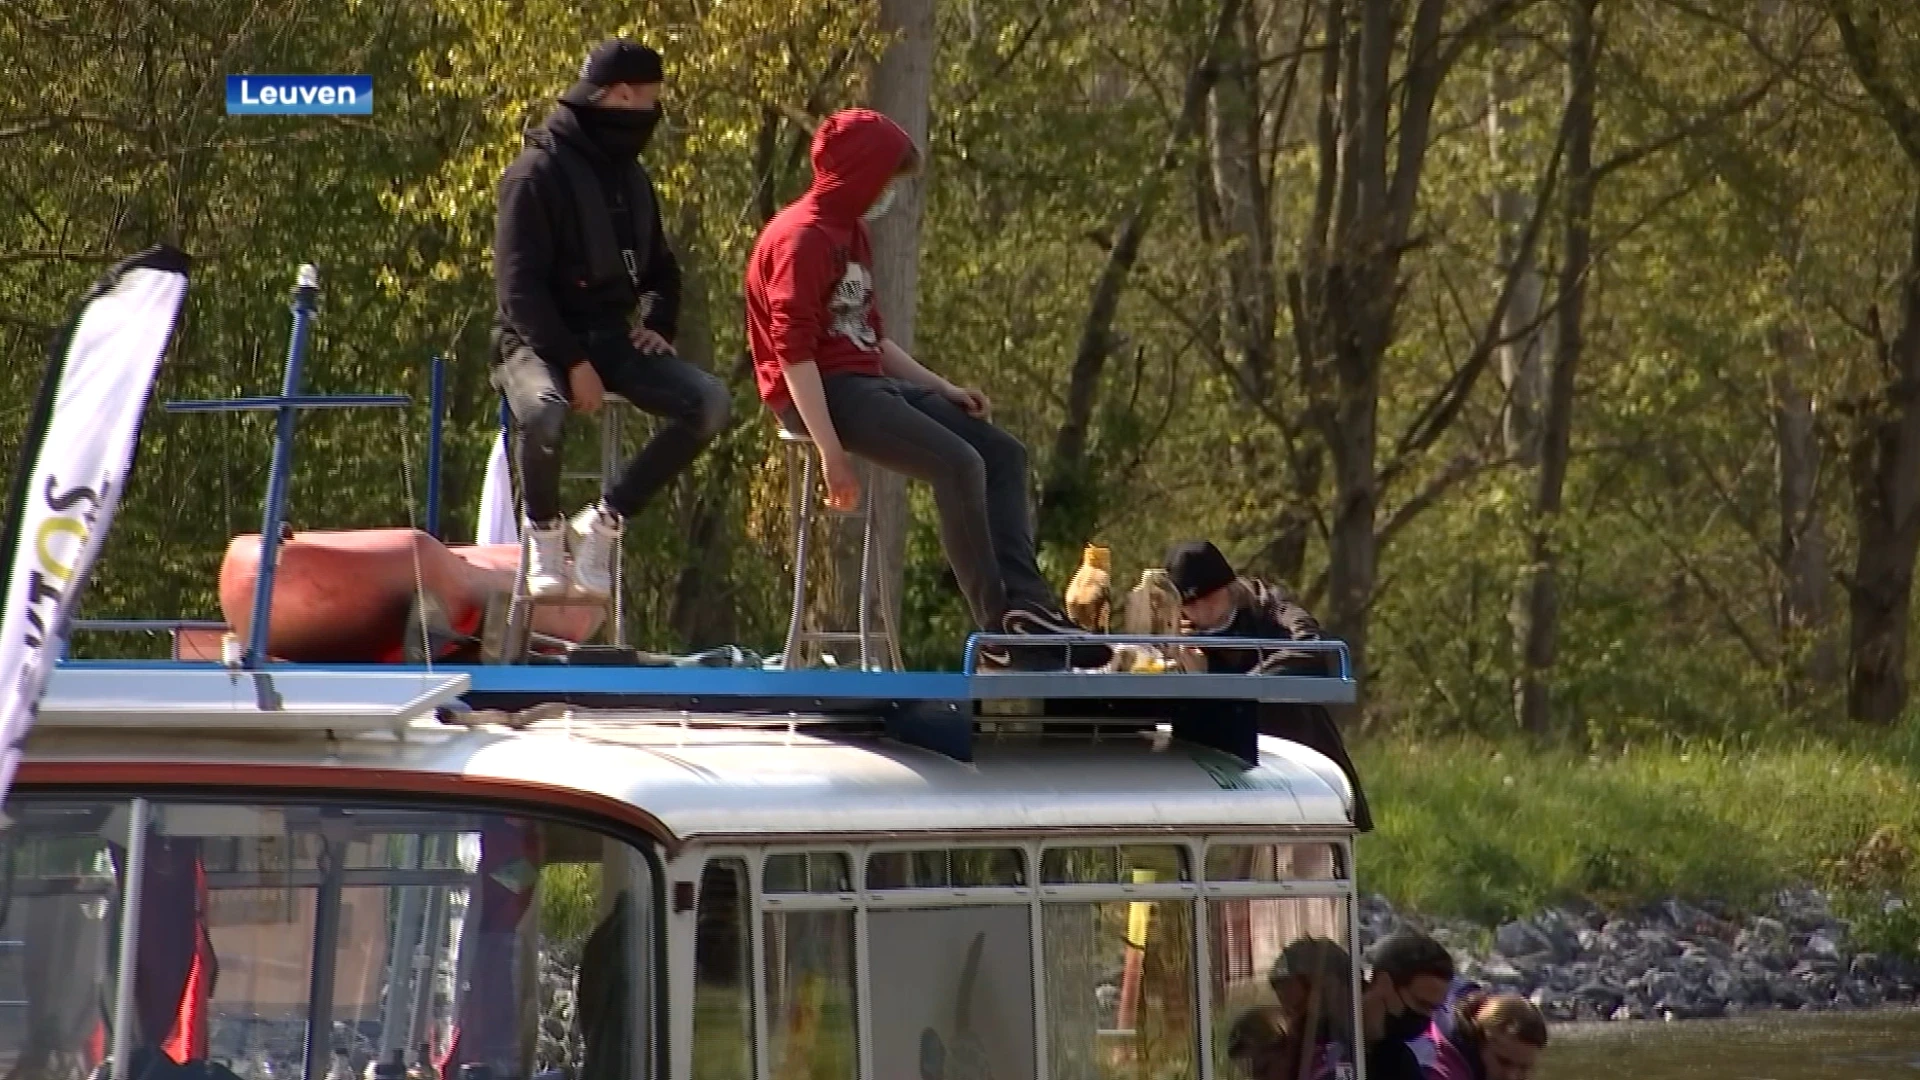 Arktos ruimt samen met jongeren zwerfvuil op langs de Leuvense vaart